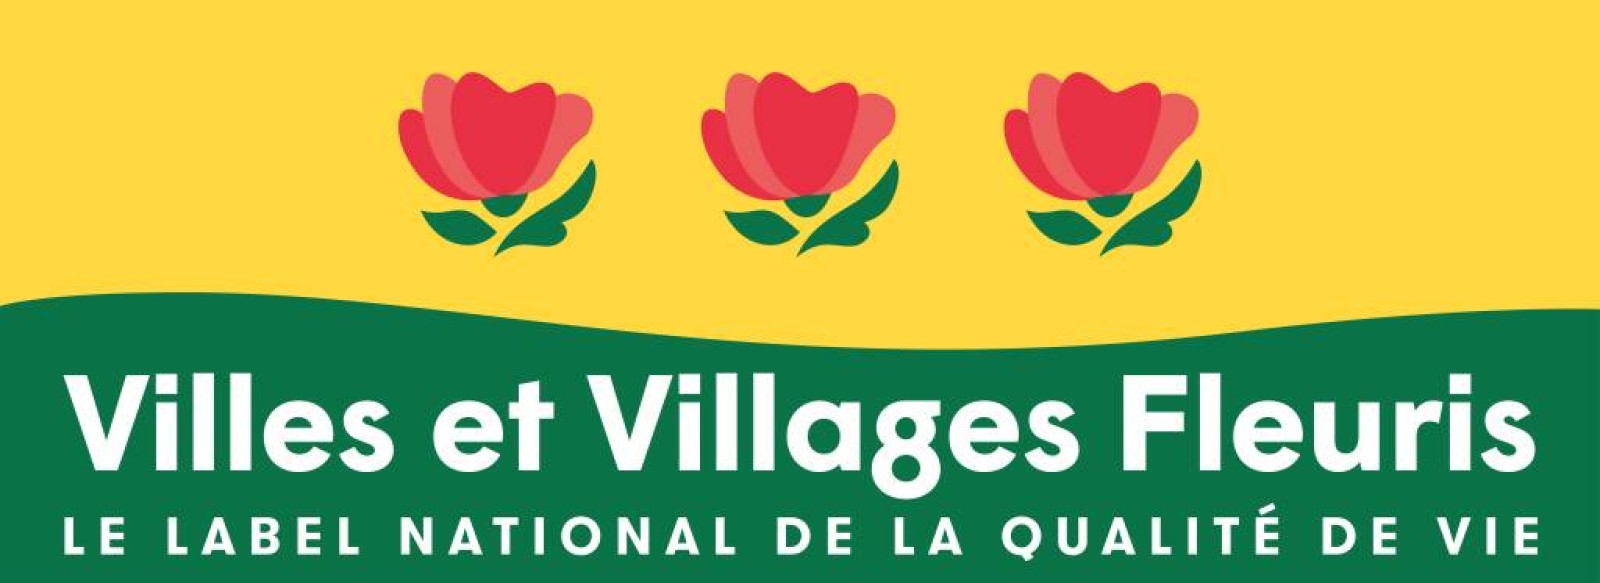 Commune fleurie de Sable-sur-Sarthe